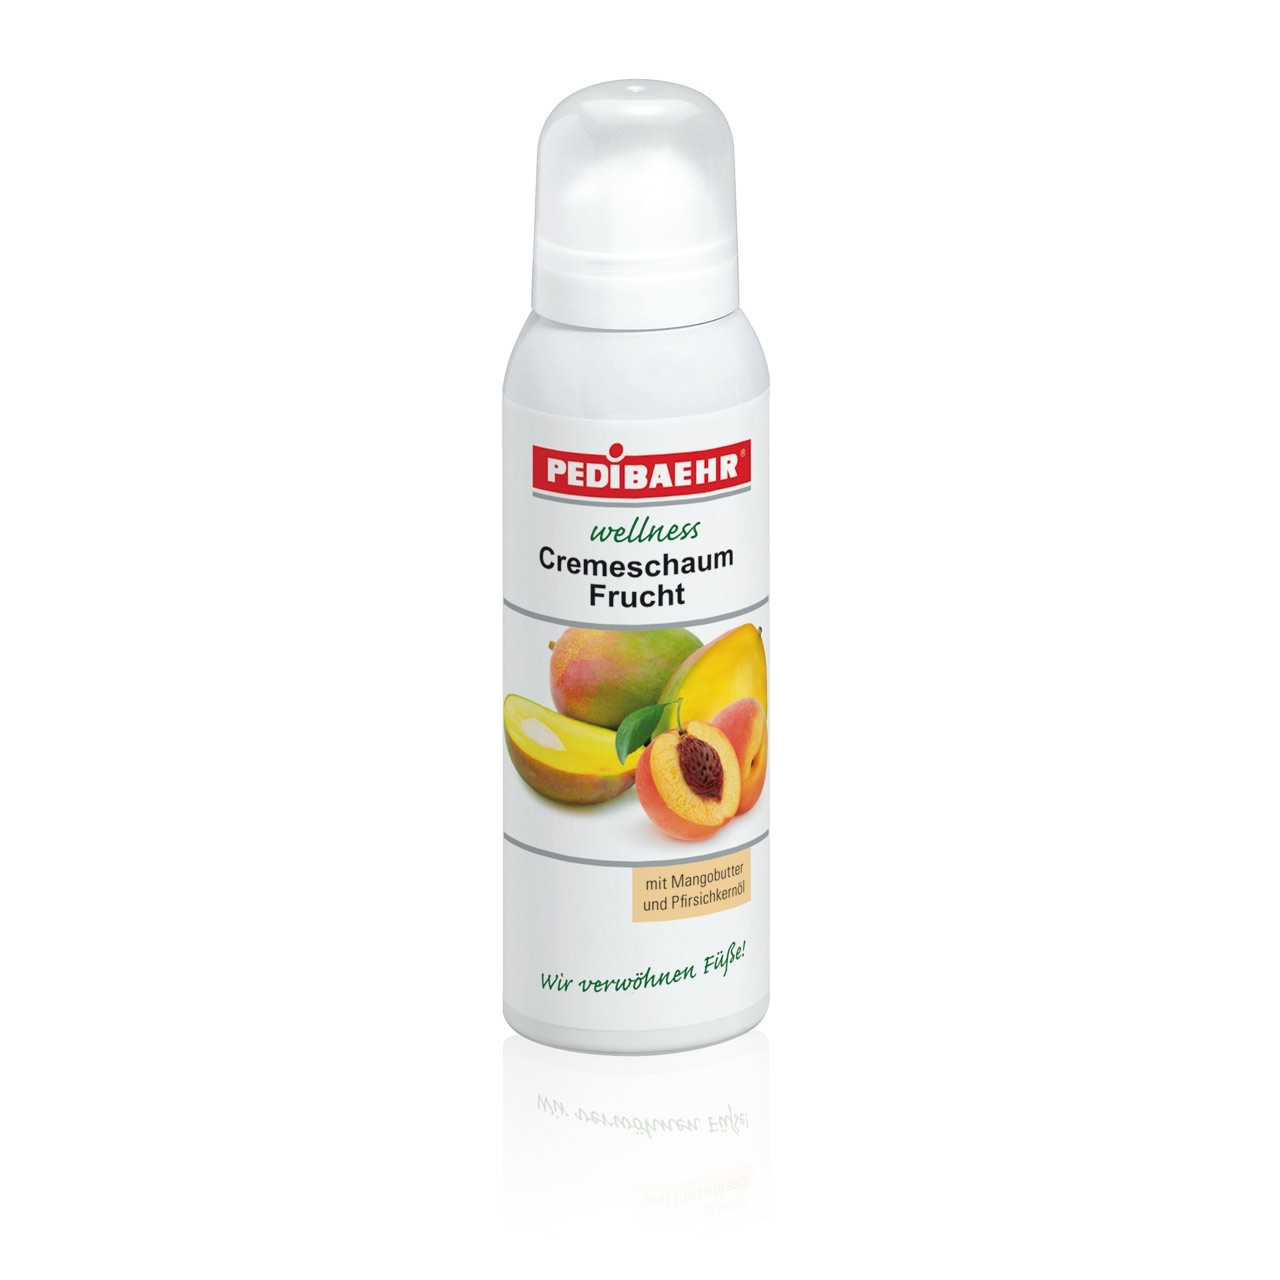 PEDIBAEHR - Wellness Cremeschaum Frucht, 125 ml